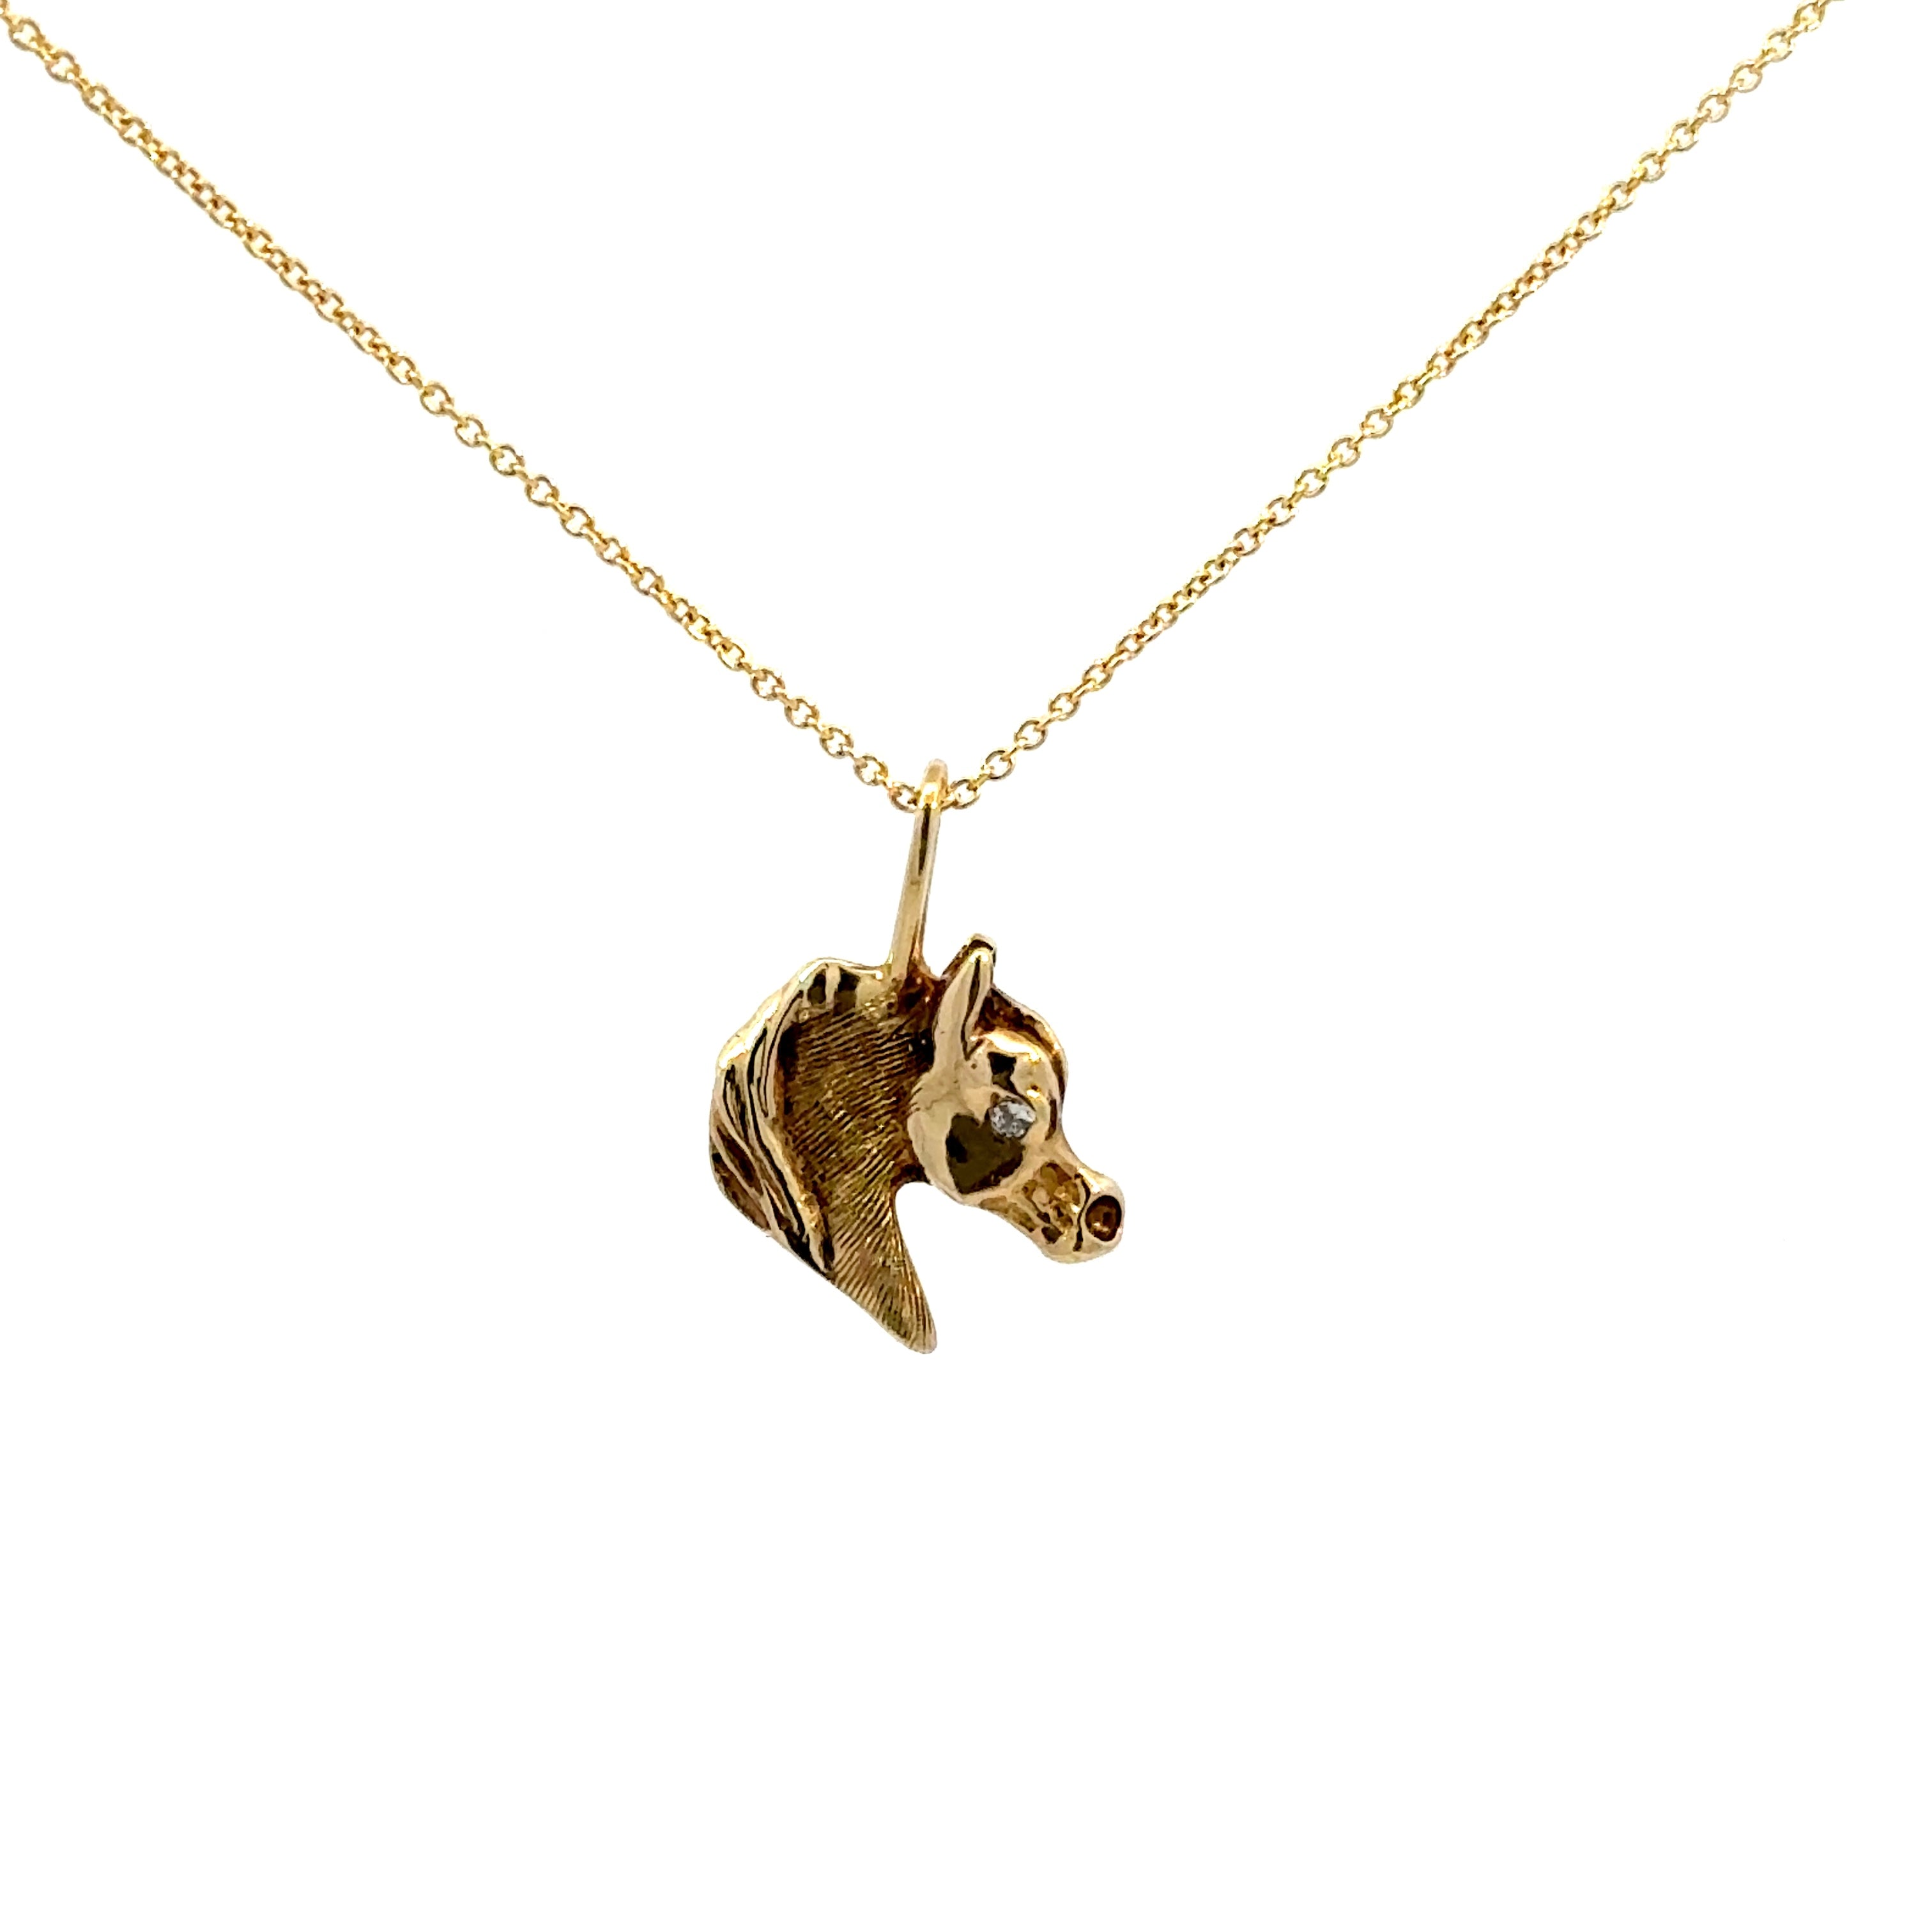 Vintage Horse Necklace set in 14k Gold